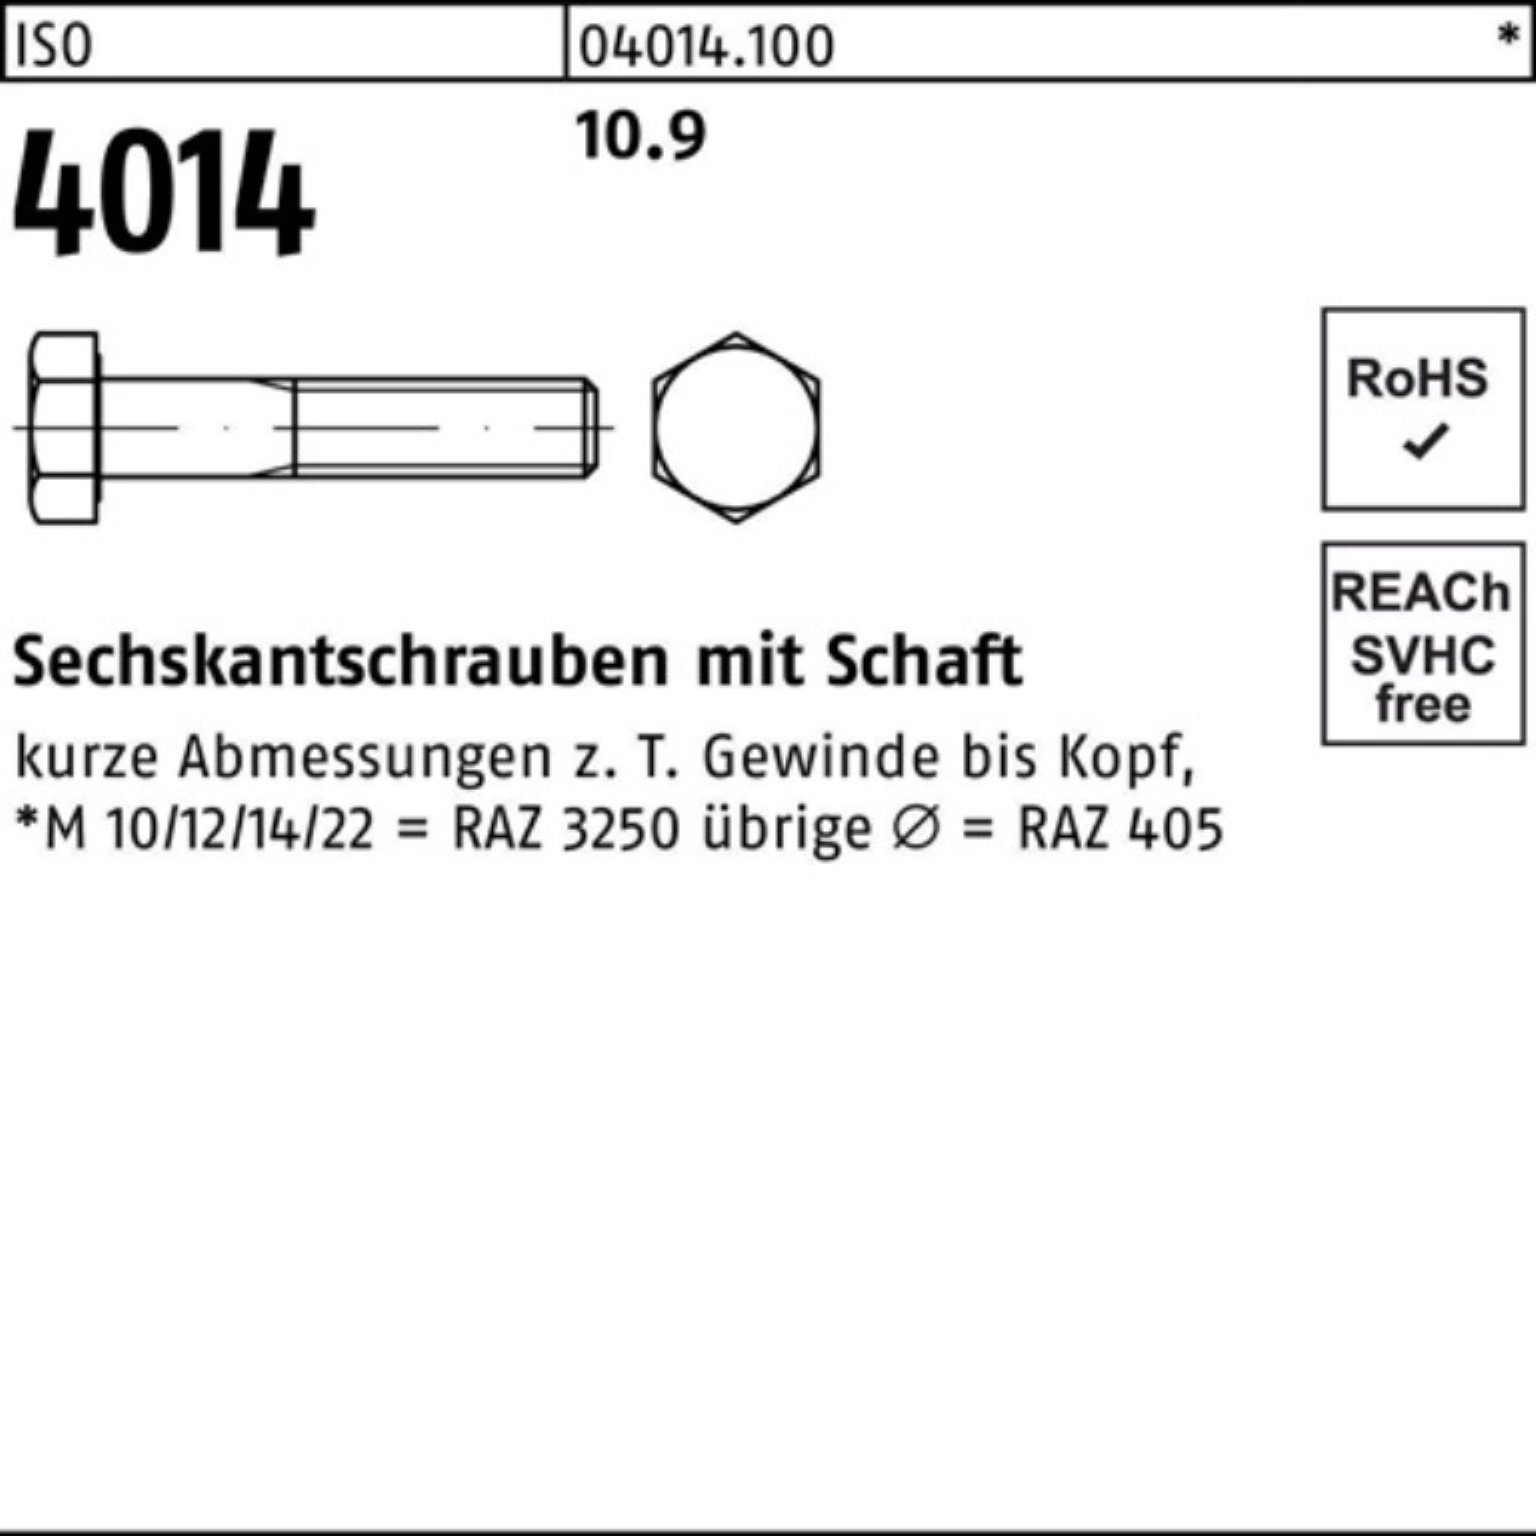 Reyher Sechskantschraube 200er M5x 35 Stück Pack Sechskantschraube Schaft 200 10.9 ISO IS 4014